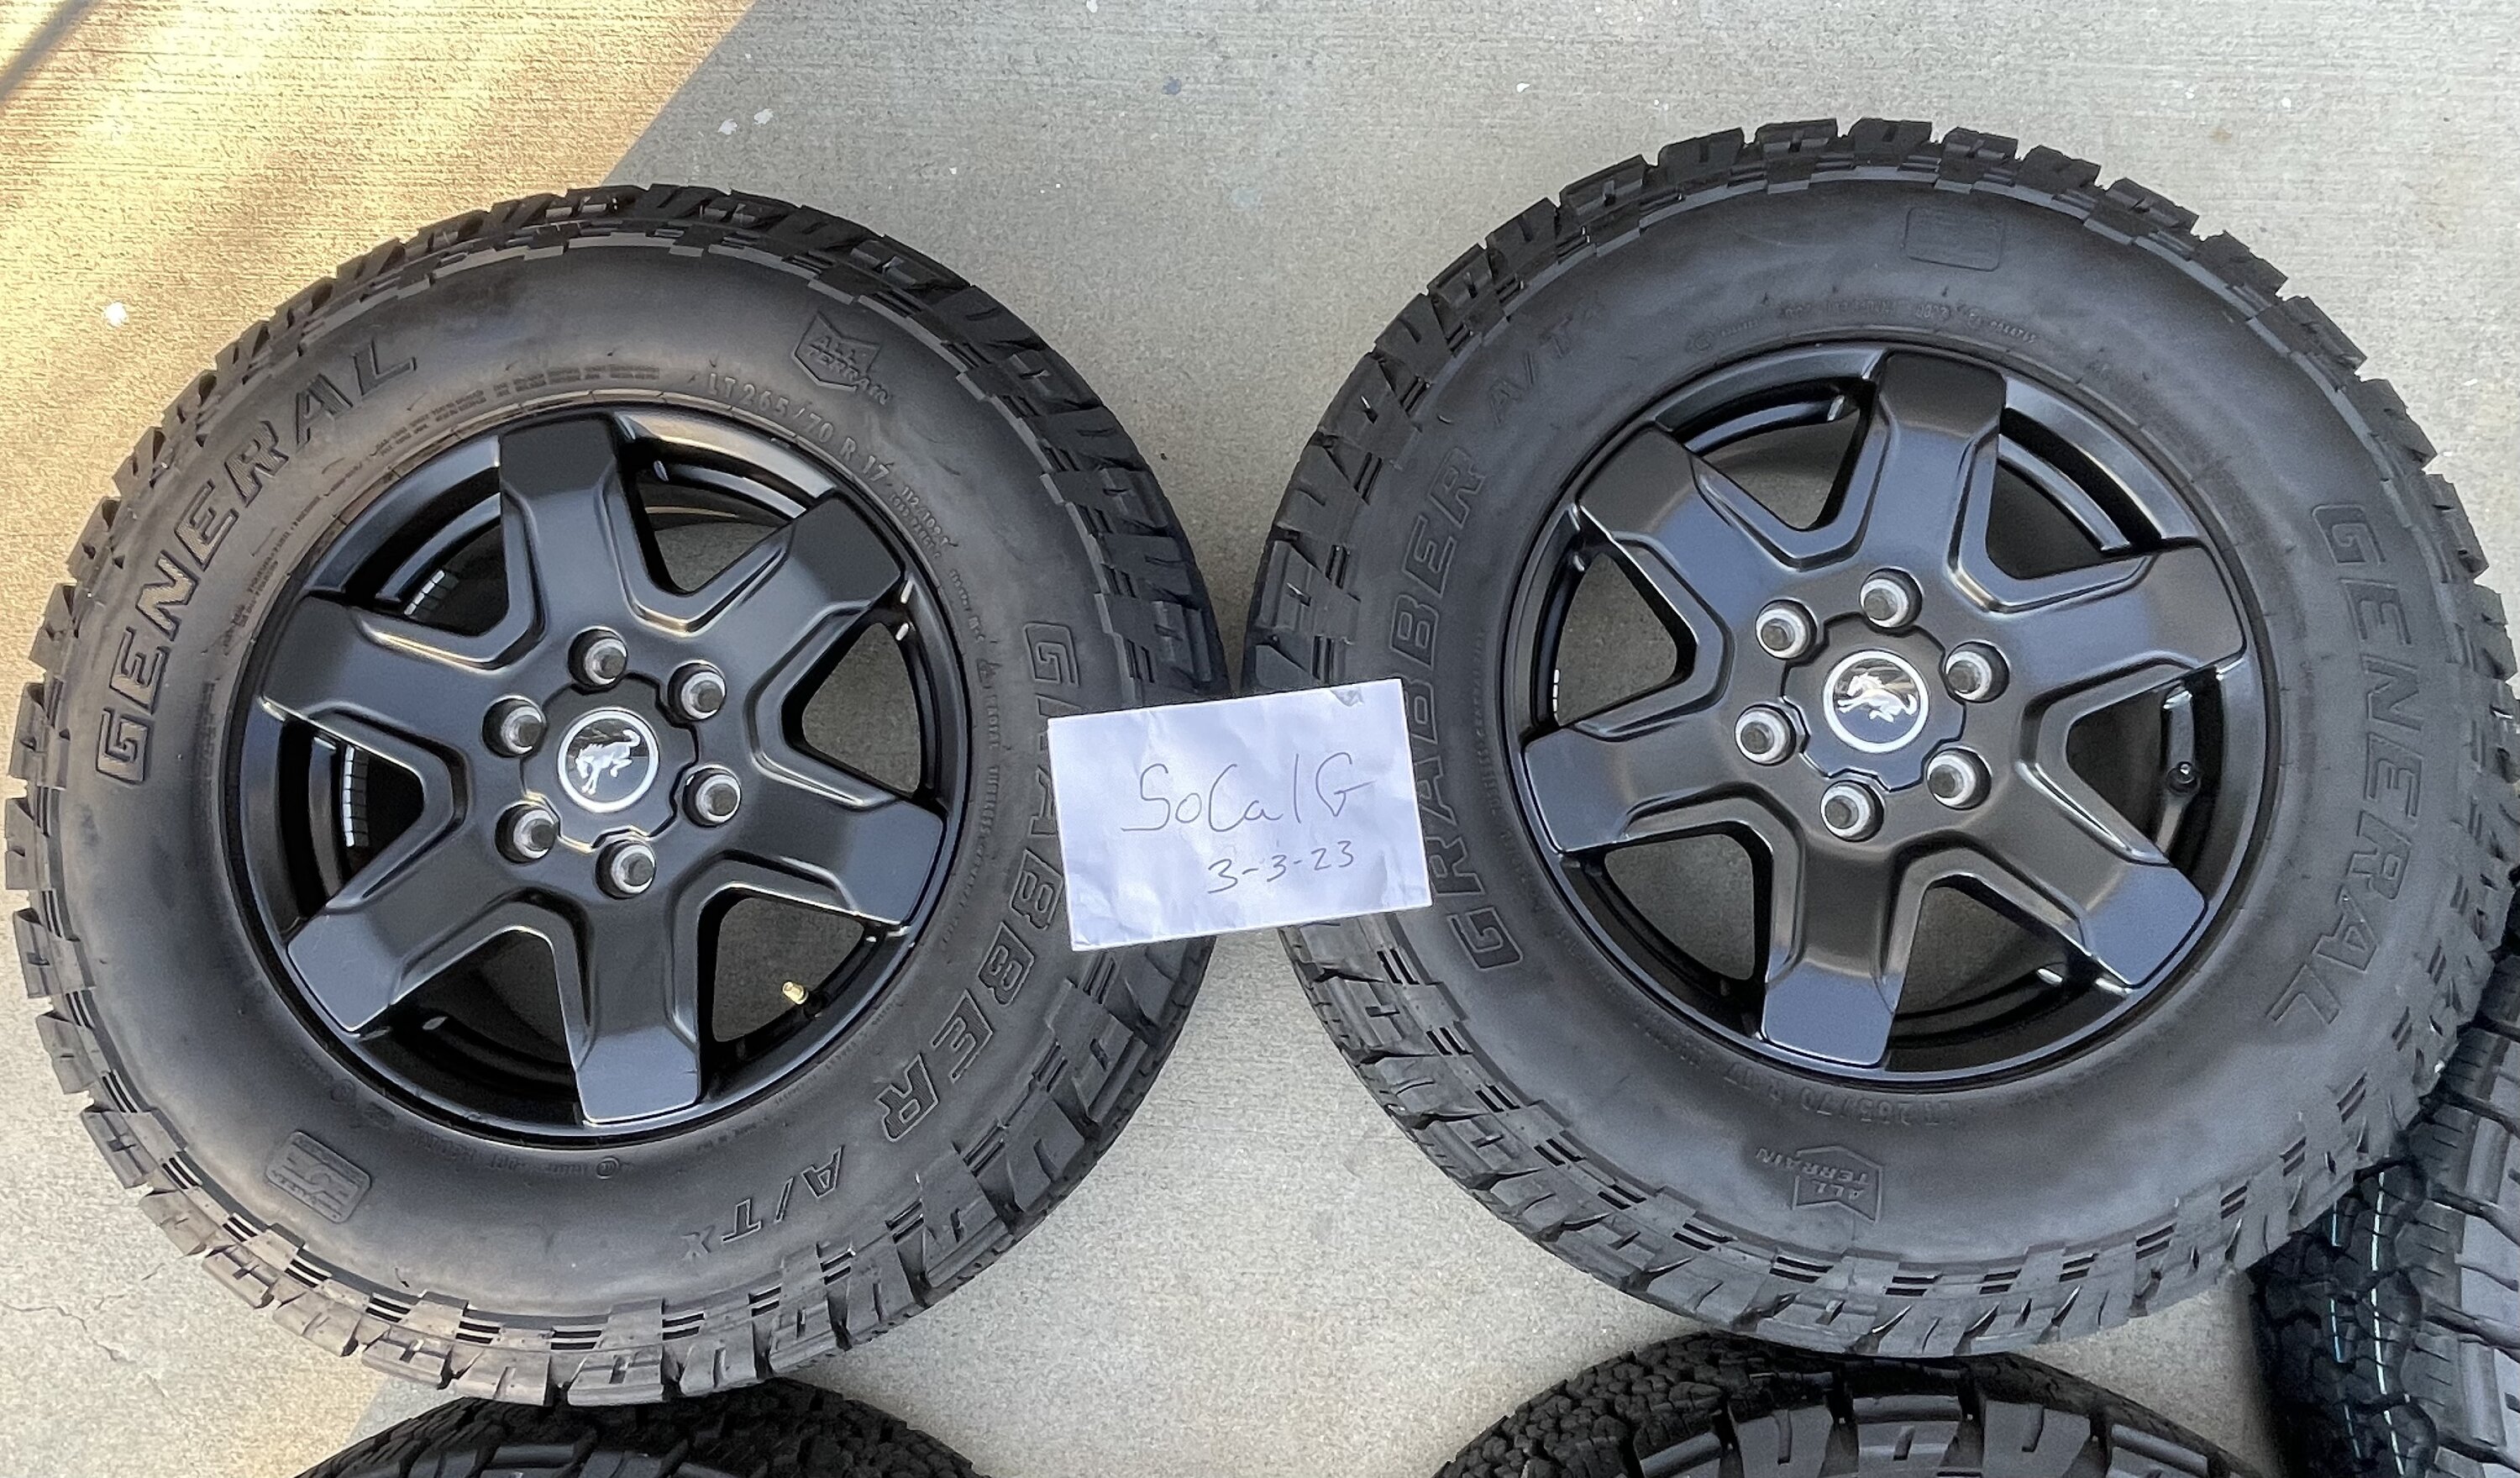 Ford Bronco WTS - Black Diamond Rims, General Grabber 32" Tires & TPMS sensors- $600 - So CAL 5AD25D7A-E2C0-42A3-9388-29914C922A67